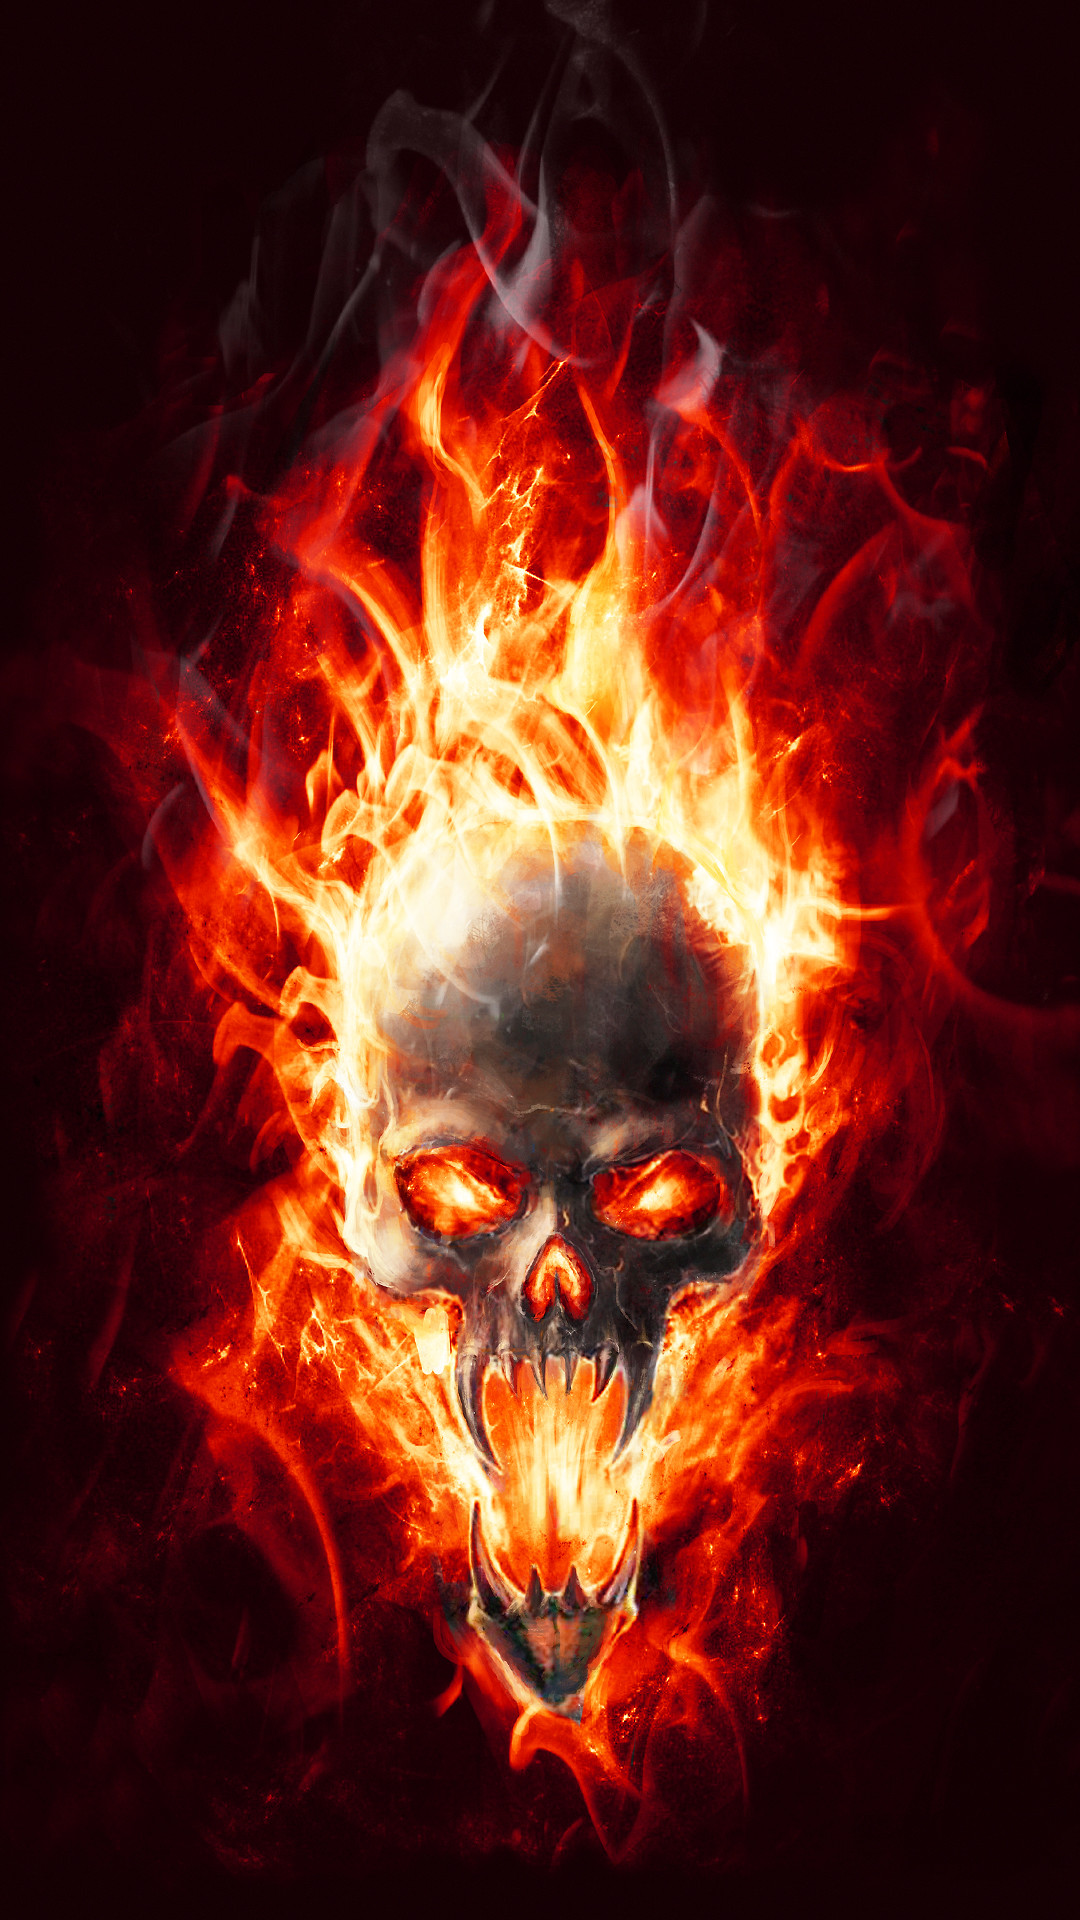 Flaming Skull - 1080x1920 Wallpaper 